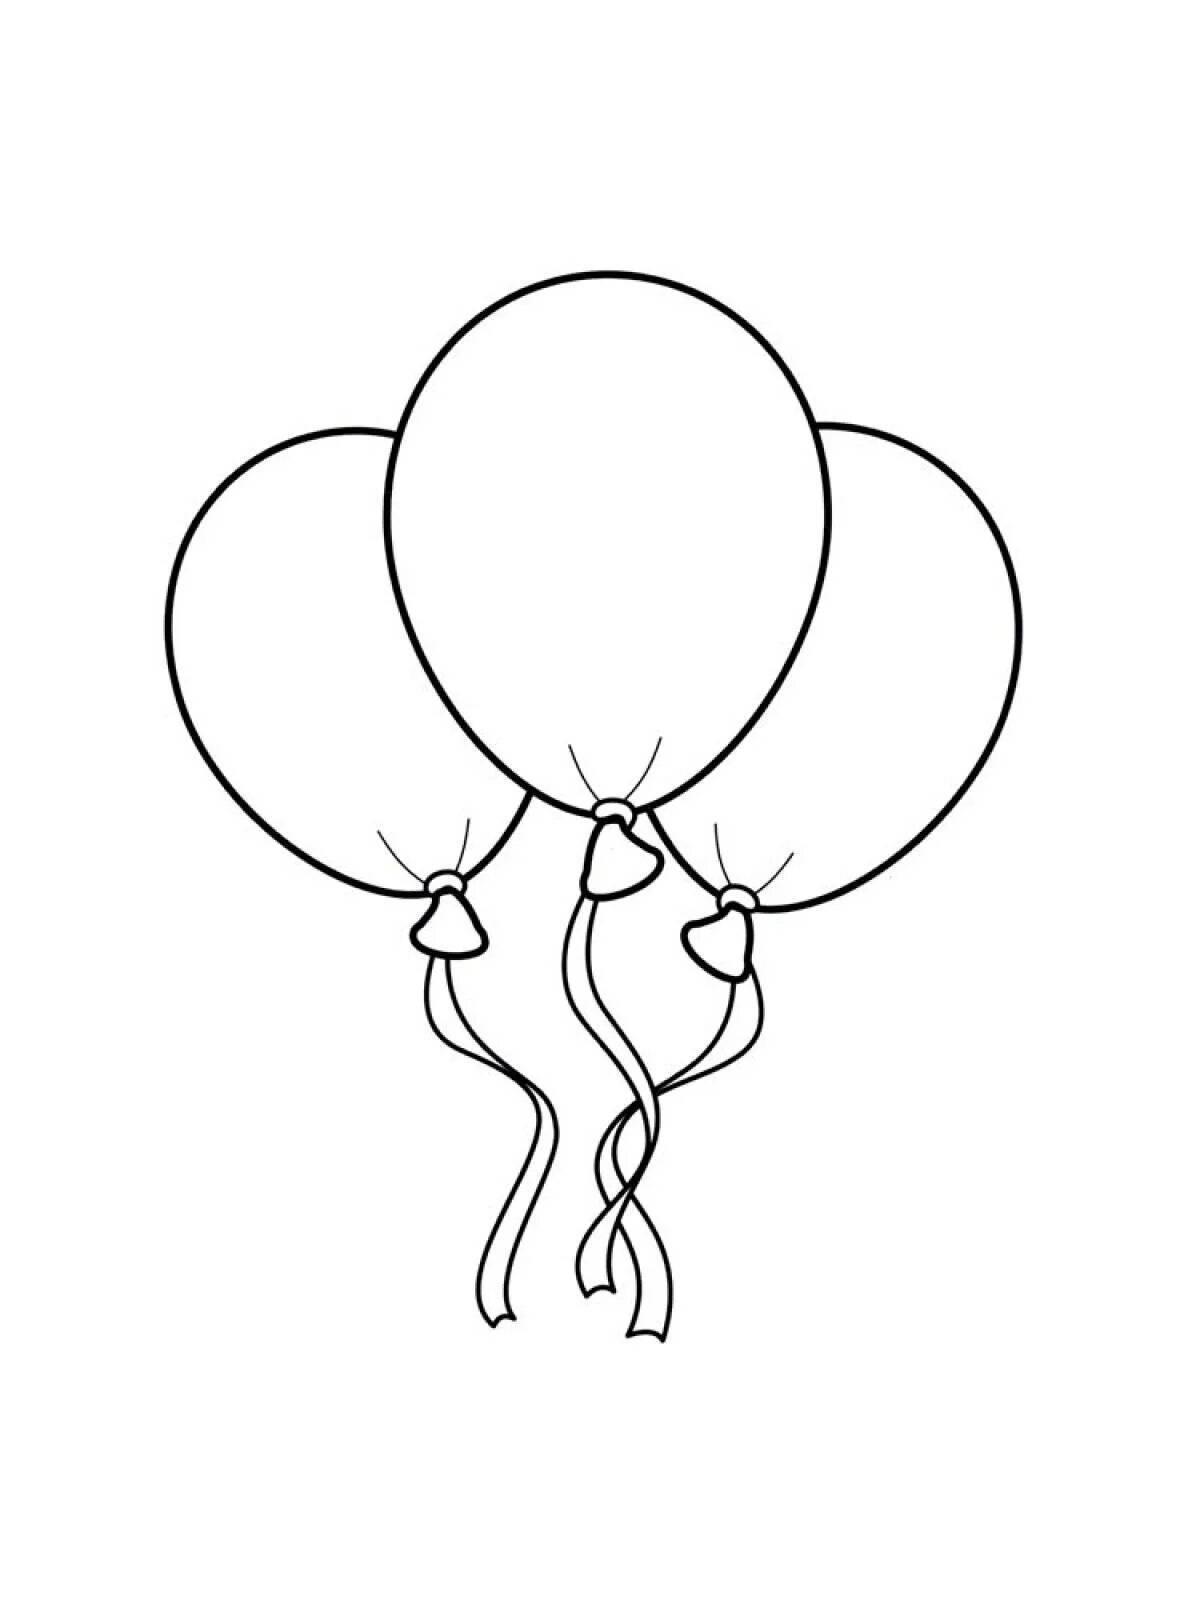 Воздушные шарики для детей 3 4 лет #4